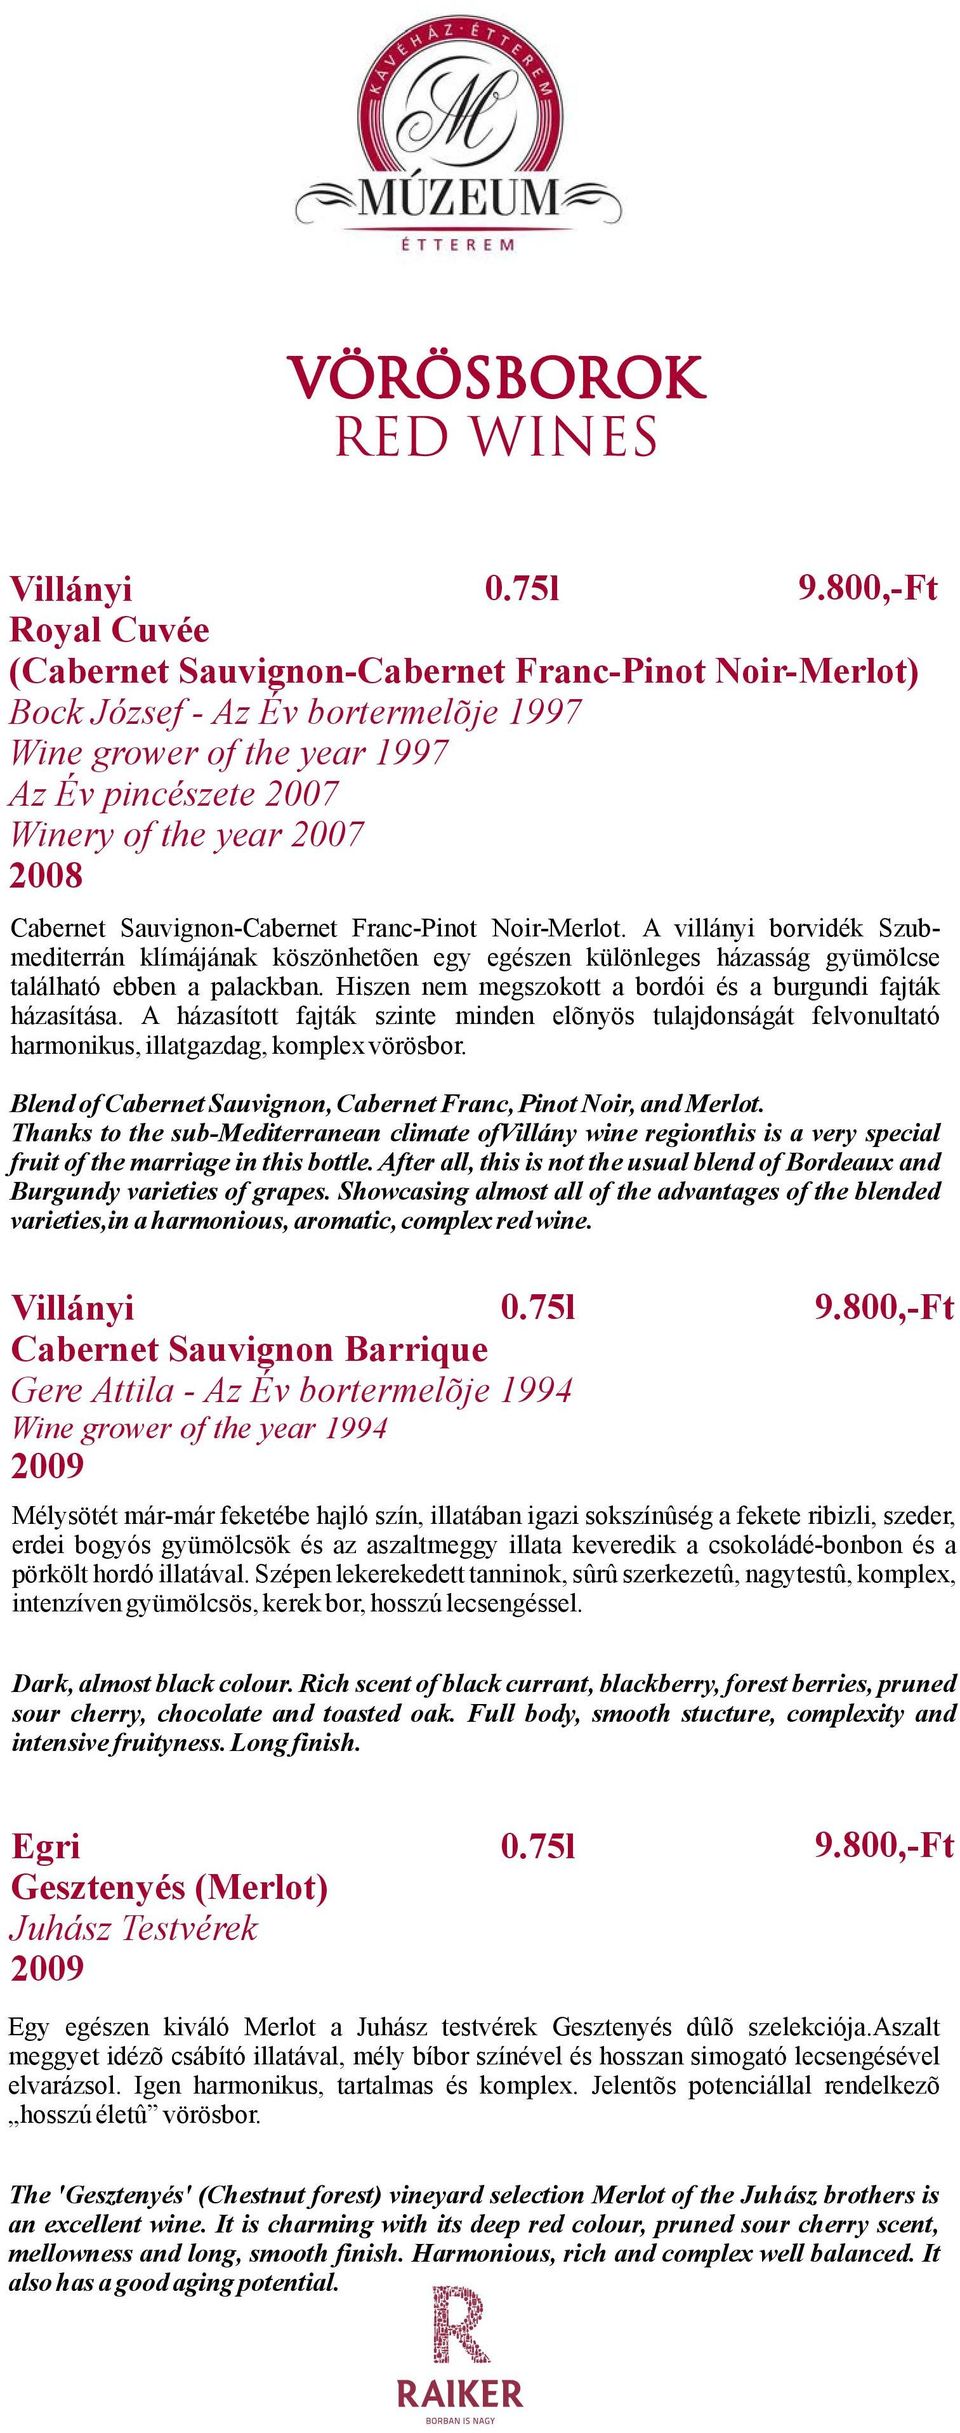 Cabernet Sauvignon-Cabernet Franc-Pinot Noir-Merlot. A villányi borvidék Szubmediterrán klímájának köszönhetõen egy egészen különleges házasság gyümölcse található ebben a palackban.